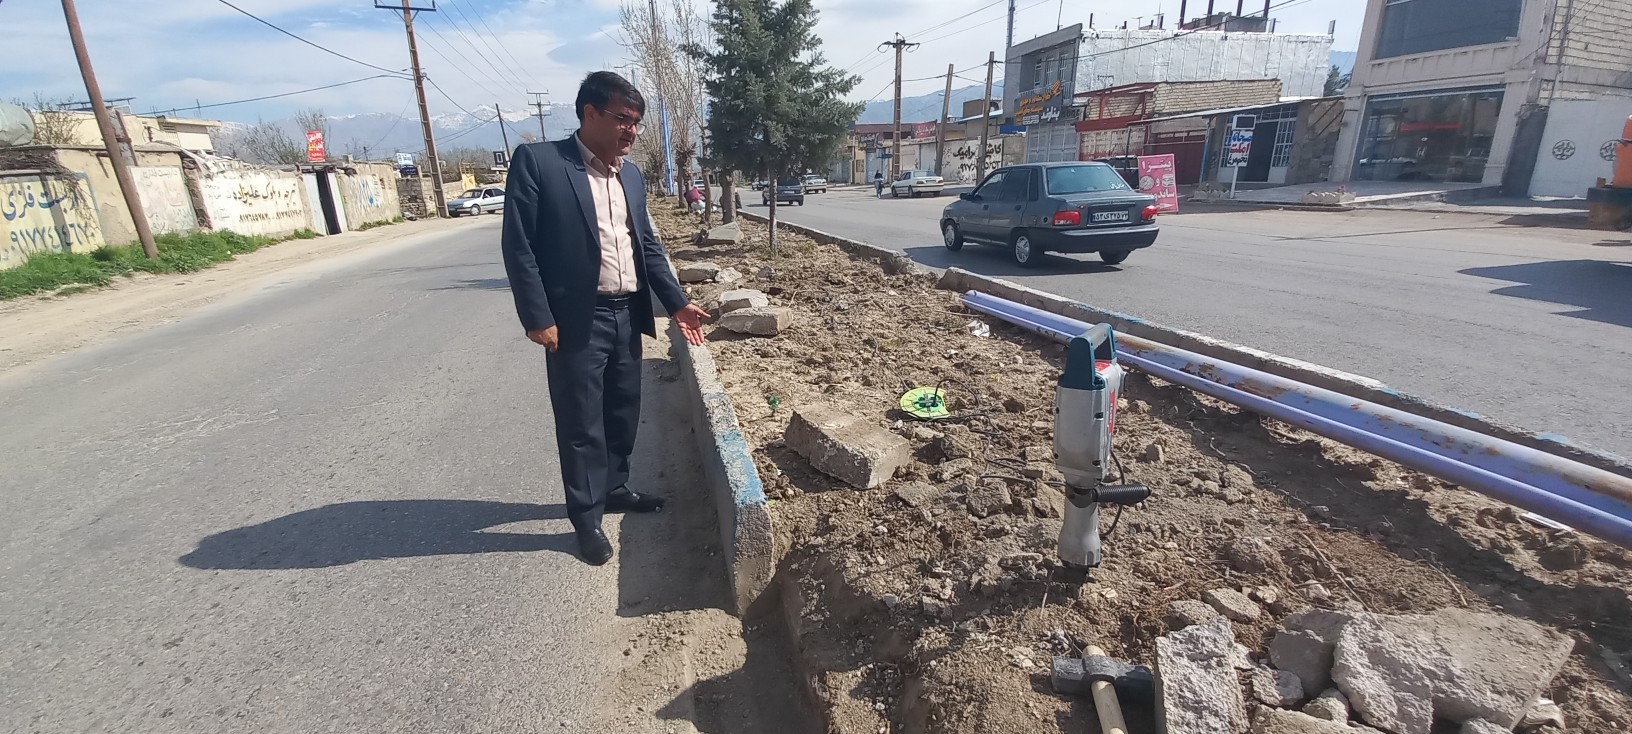 شهردار یاسوج: اجرای همزمان بیش از 6 هزار متر جدول گذاری در محلات شهر